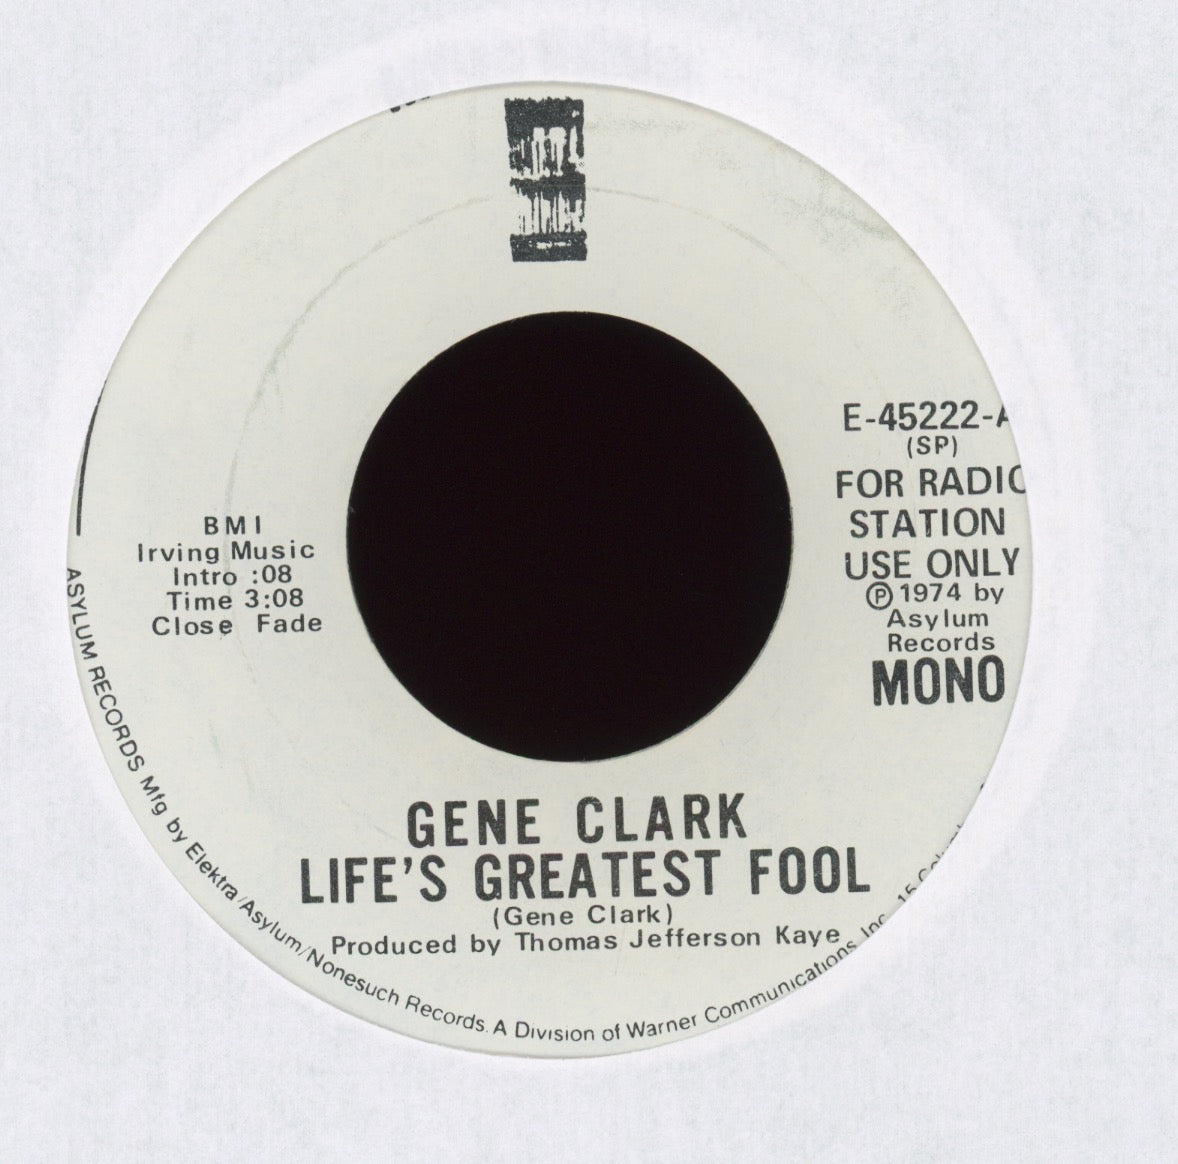 Gene Clark - Life's Greatest Fool on Asylum Promo